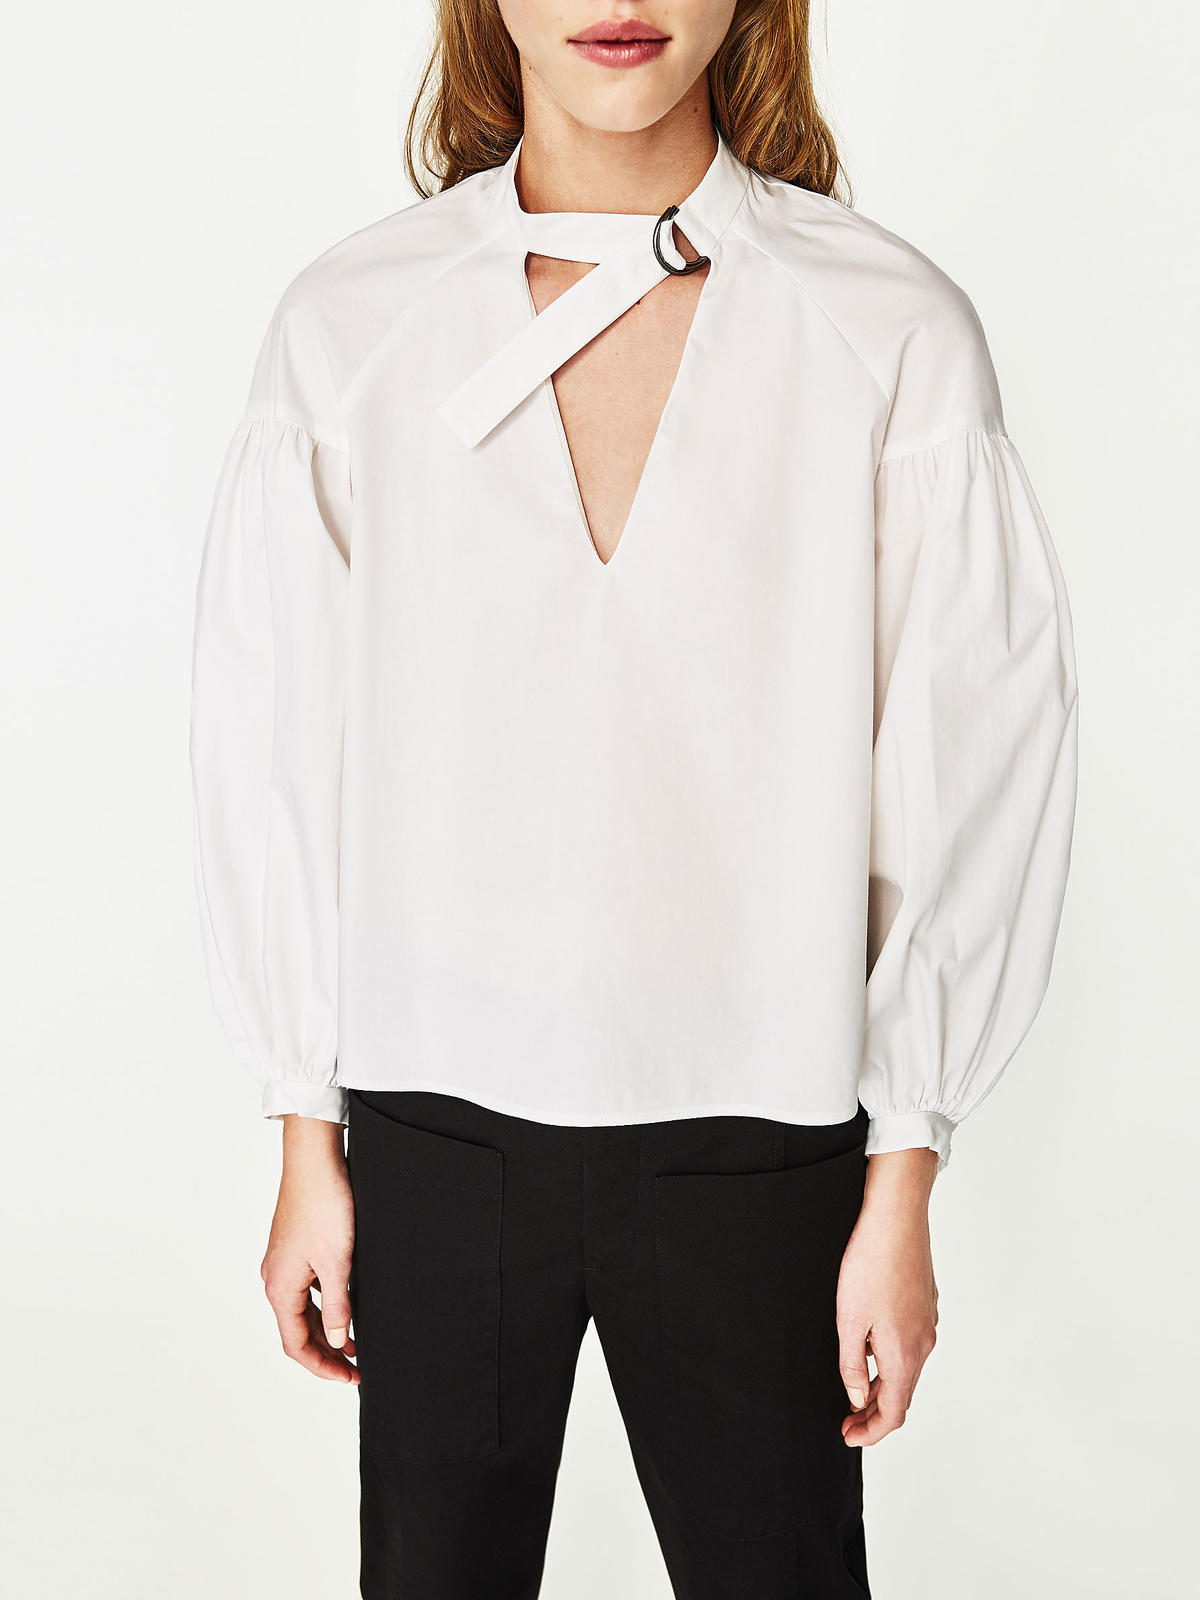 Biała bluzka z chokerem - Zara